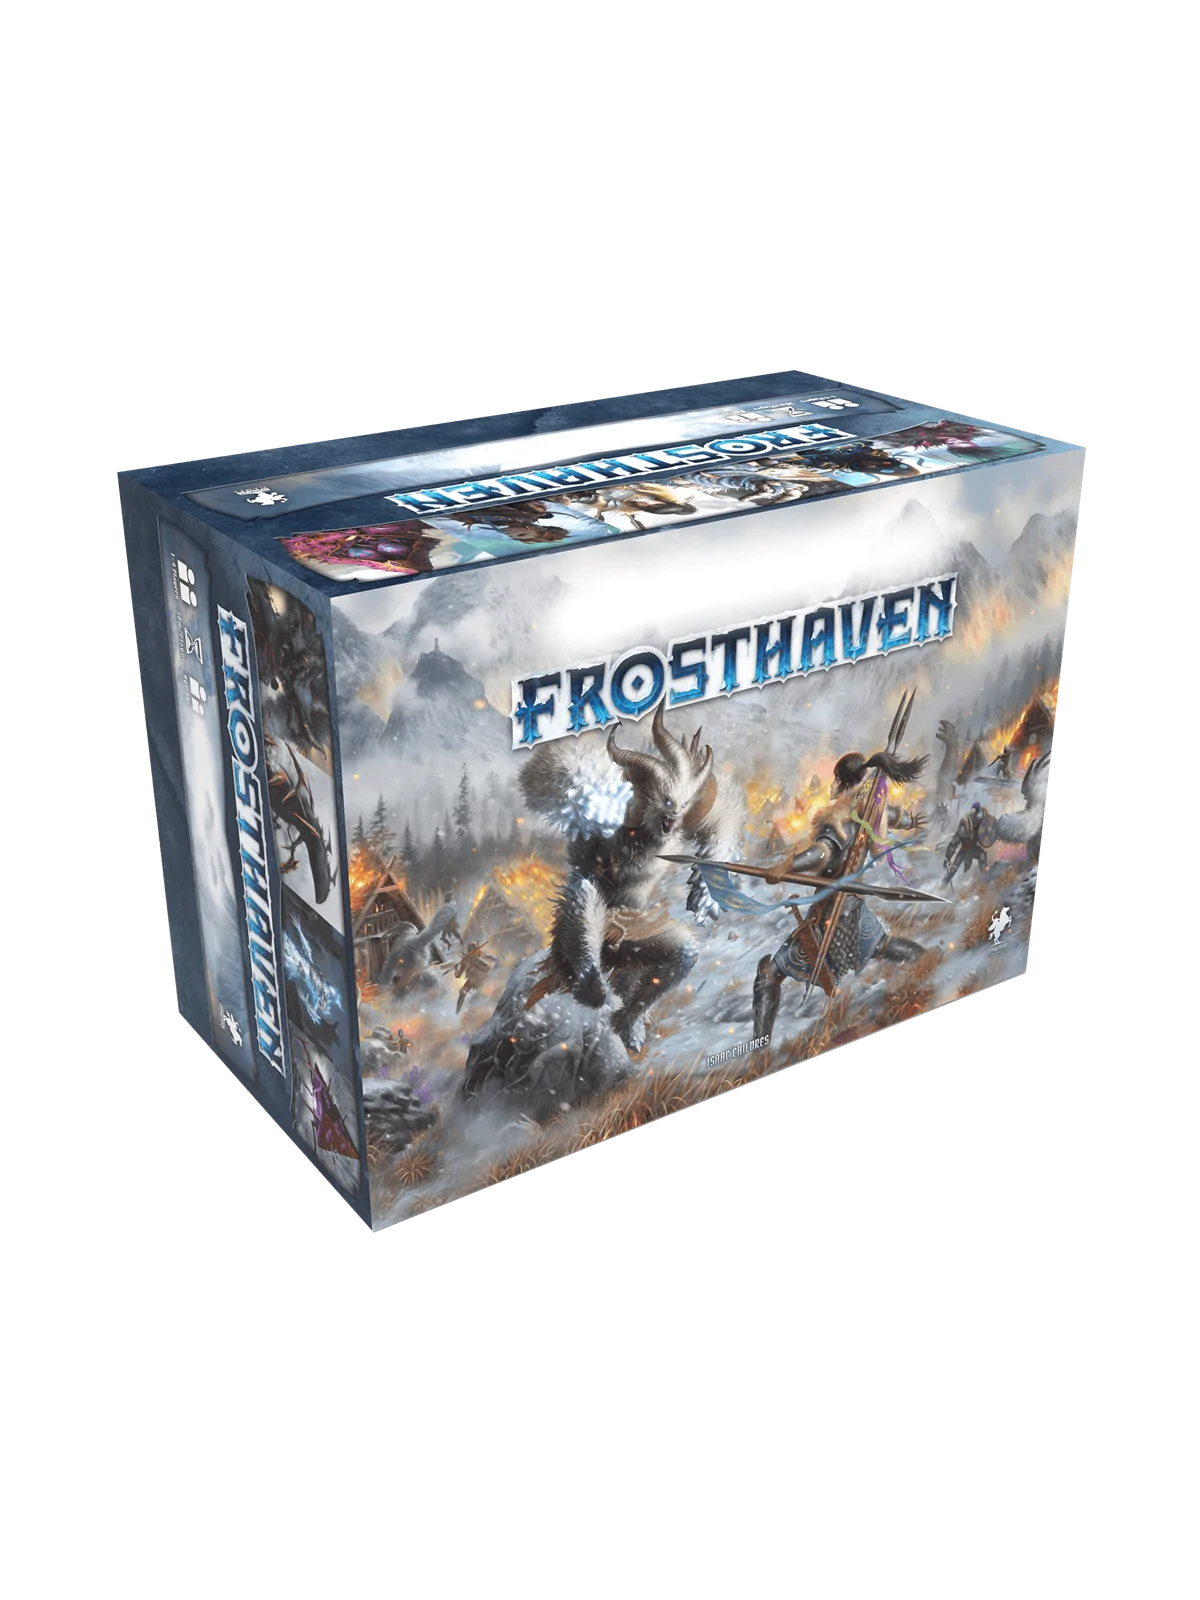 Comprar Frosthaven barato al mejor precio 299,99 € de Cephalofair Game